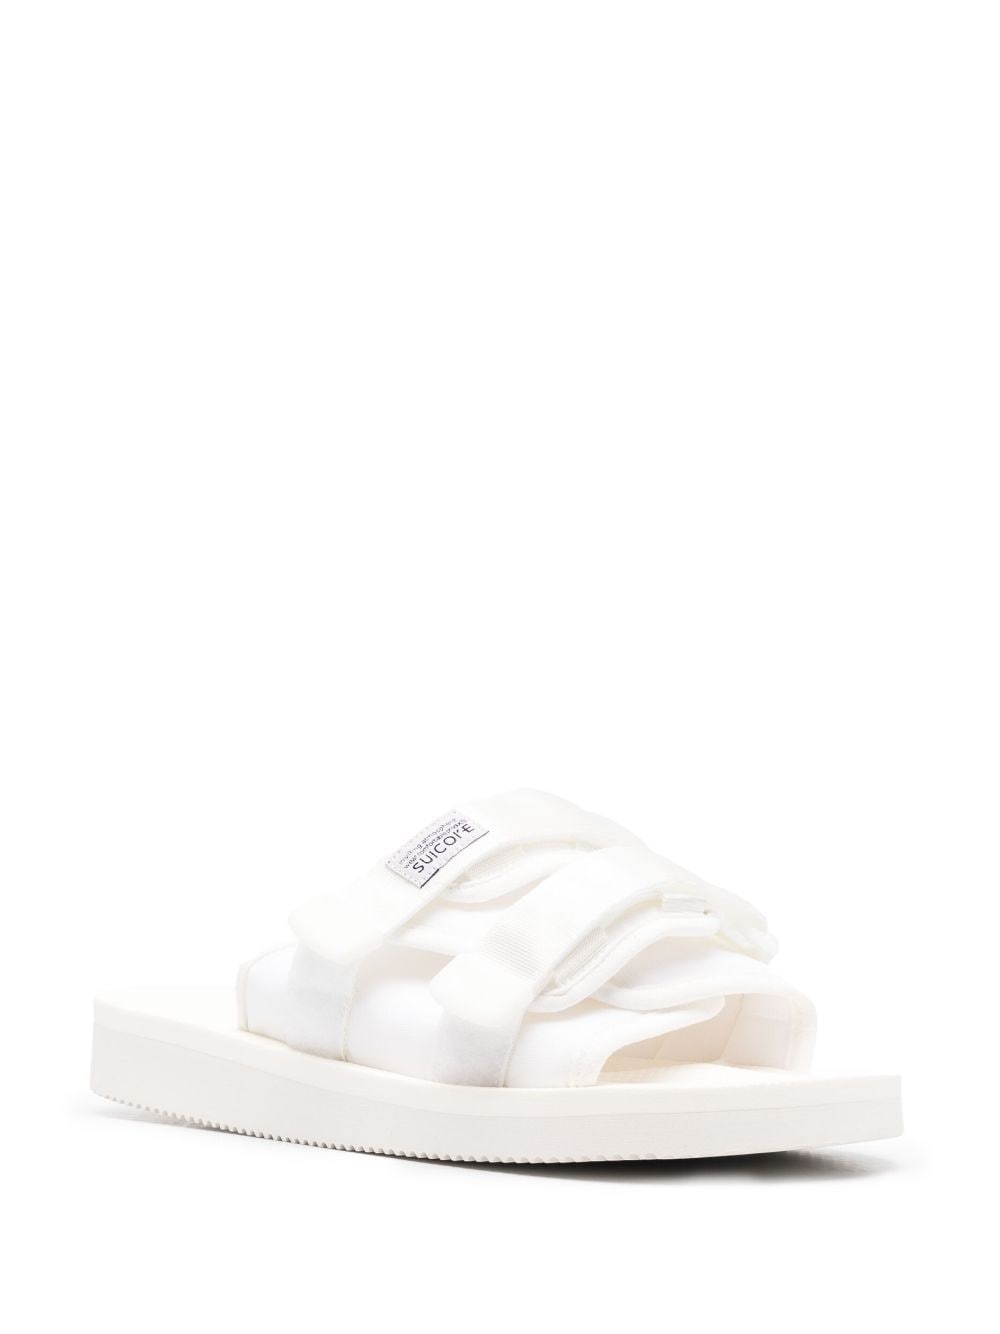 Shop Suicoke Moto-vpo Open-toe Sandals In White